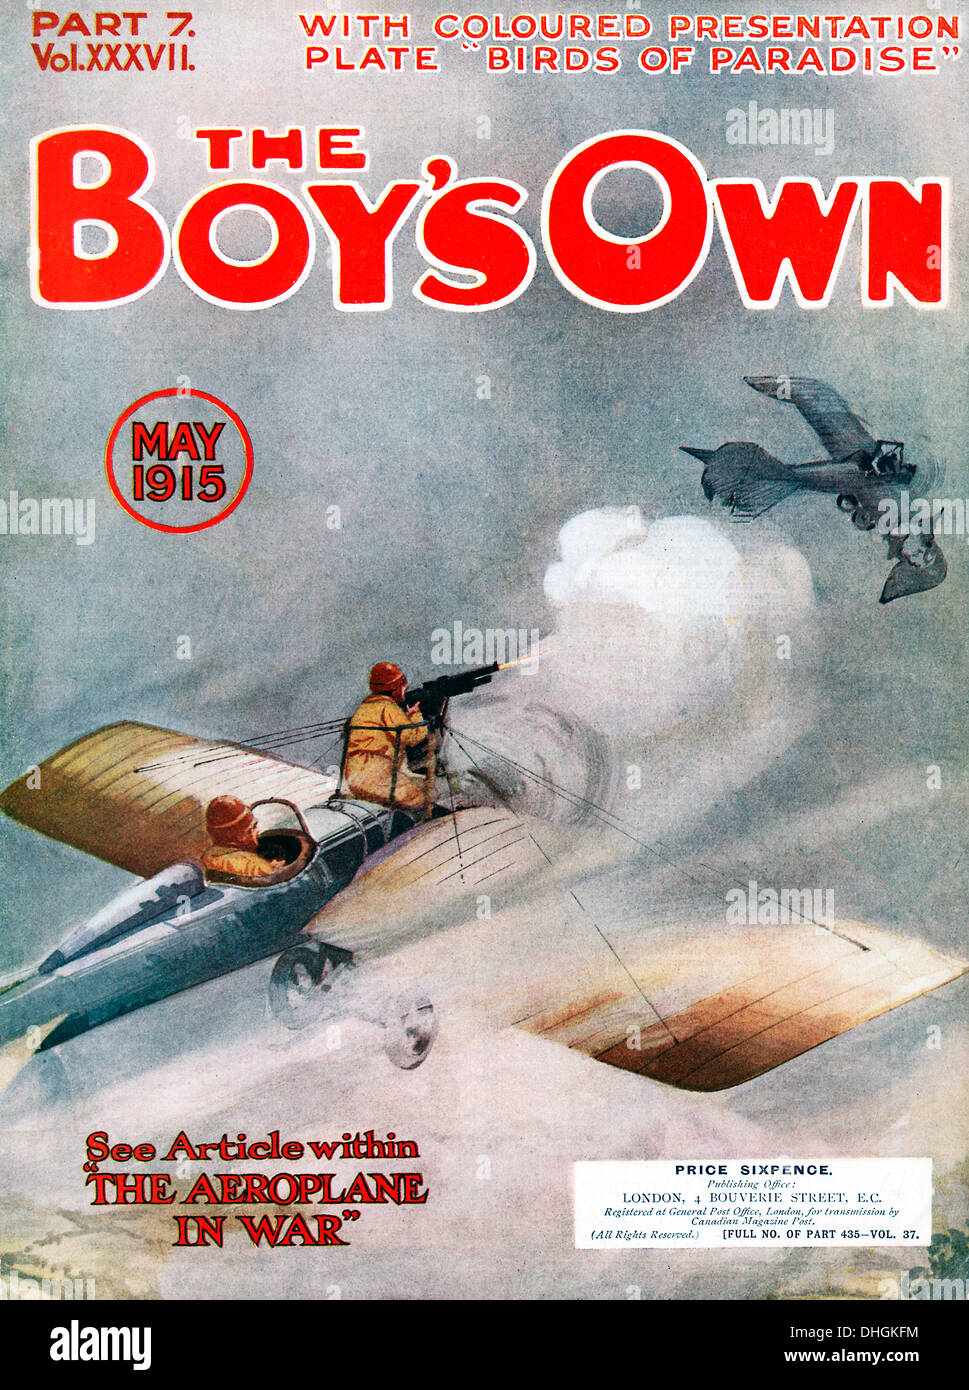 Ragazzi propria carta, combattimento aereo, 1915 copertina della rivista con un problema sull'aereo in guerra - molto presto la guerra in aria Foto Stock